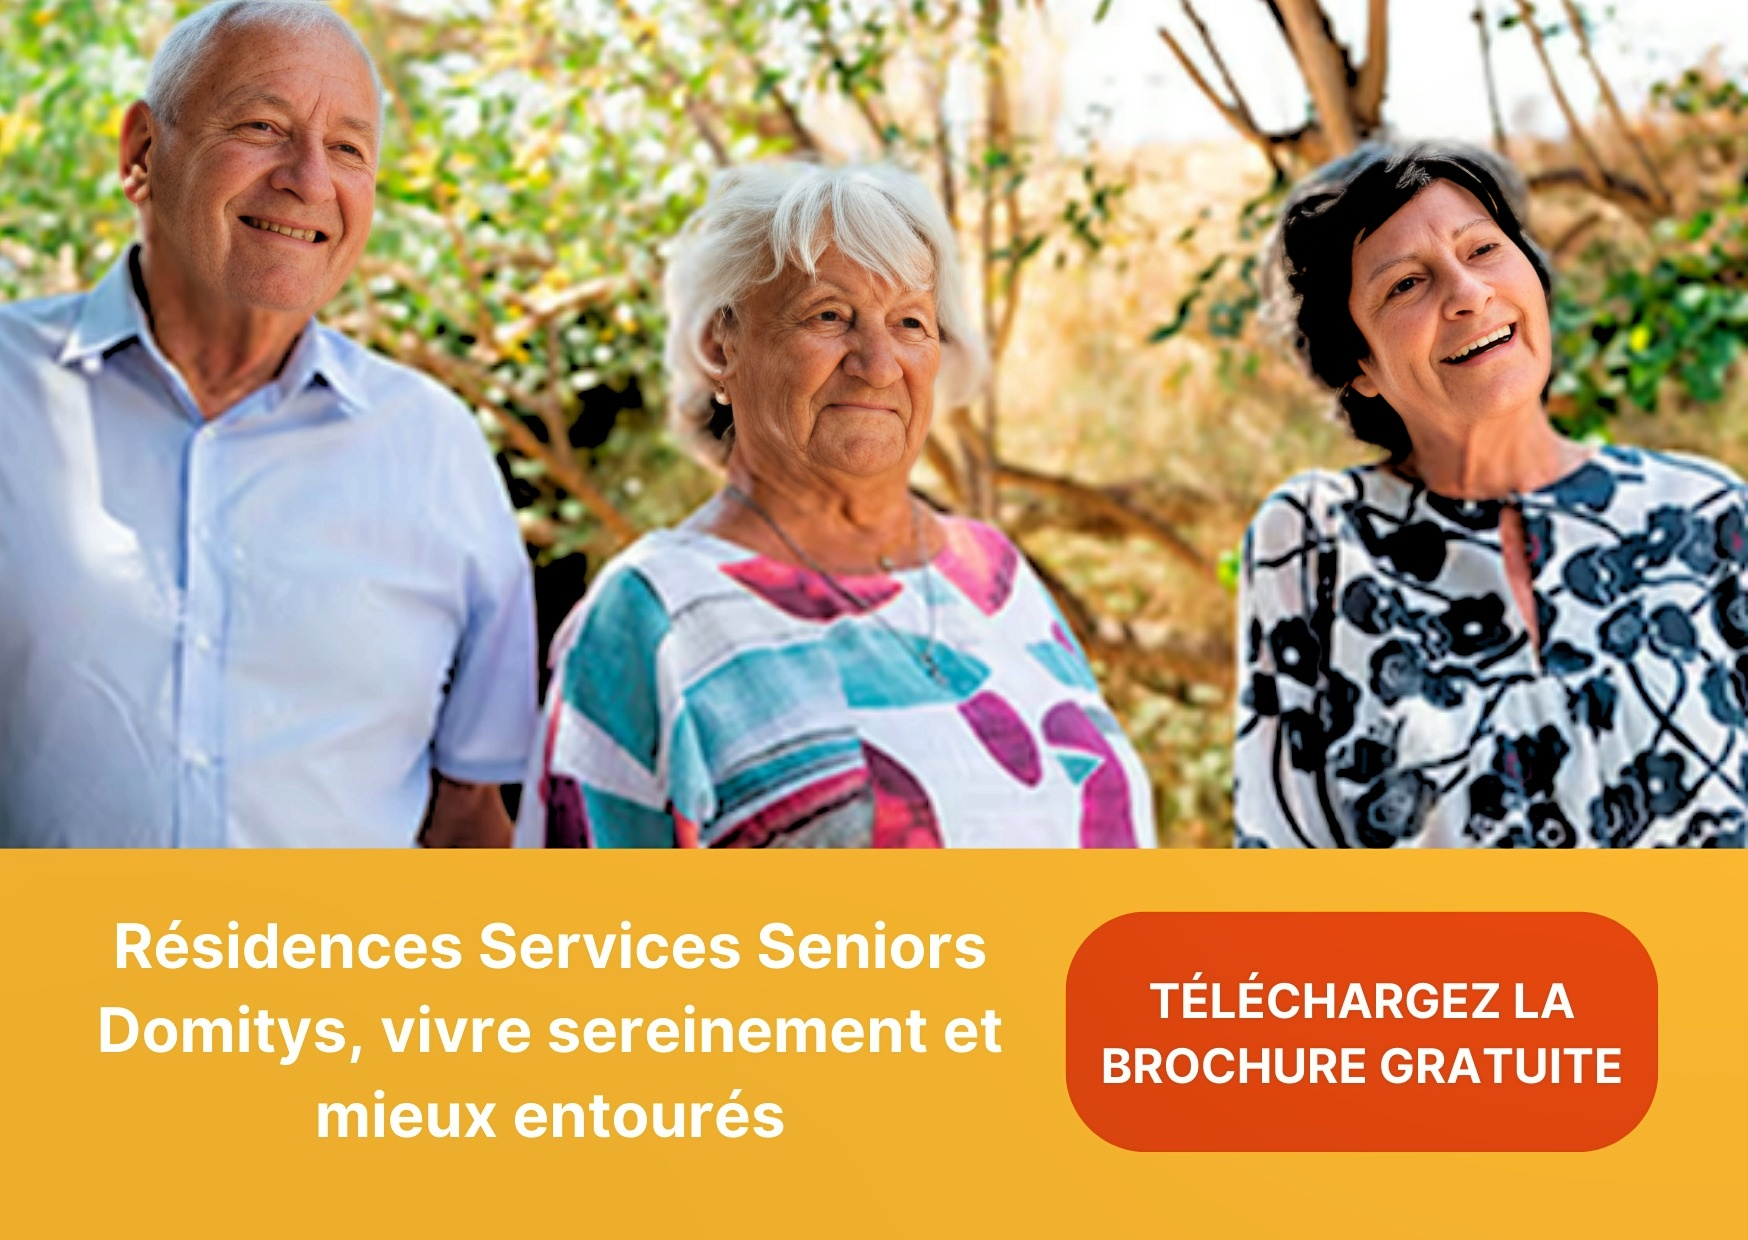 Envie d'en savoir plus                                         sur les Résidences                                         Services Seniors Domitys ?                                         